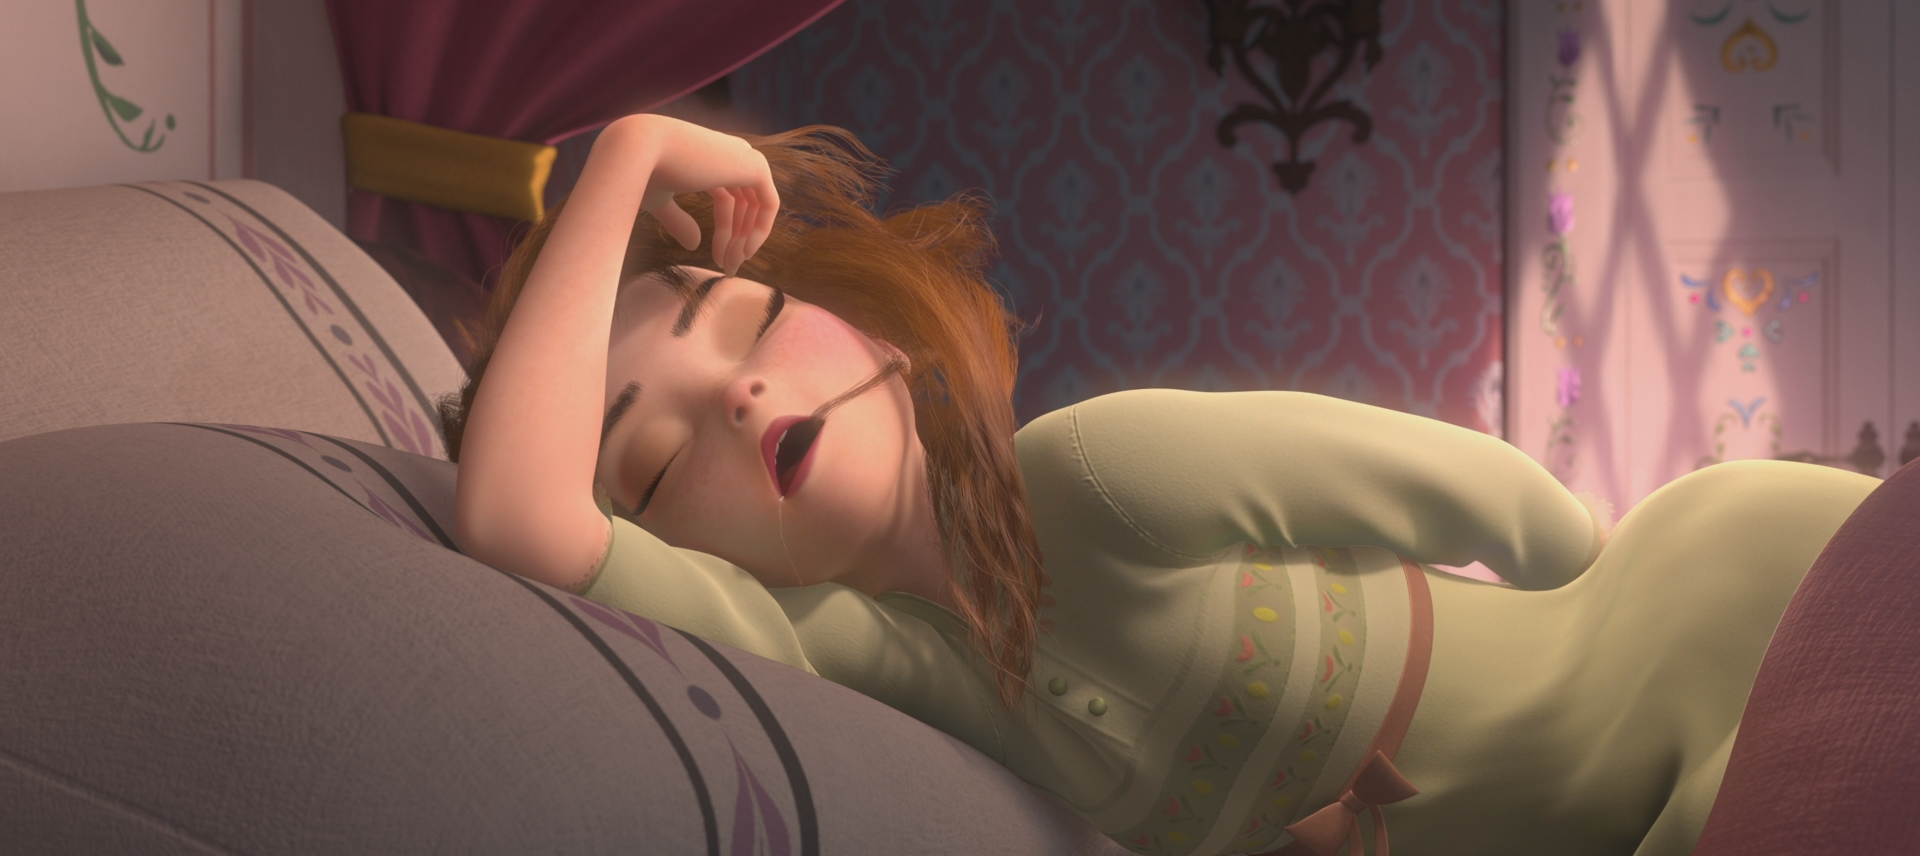 La_Reine_des_Neiges(Disney)Anna_réveil_difficile_jour_du_couronnement.